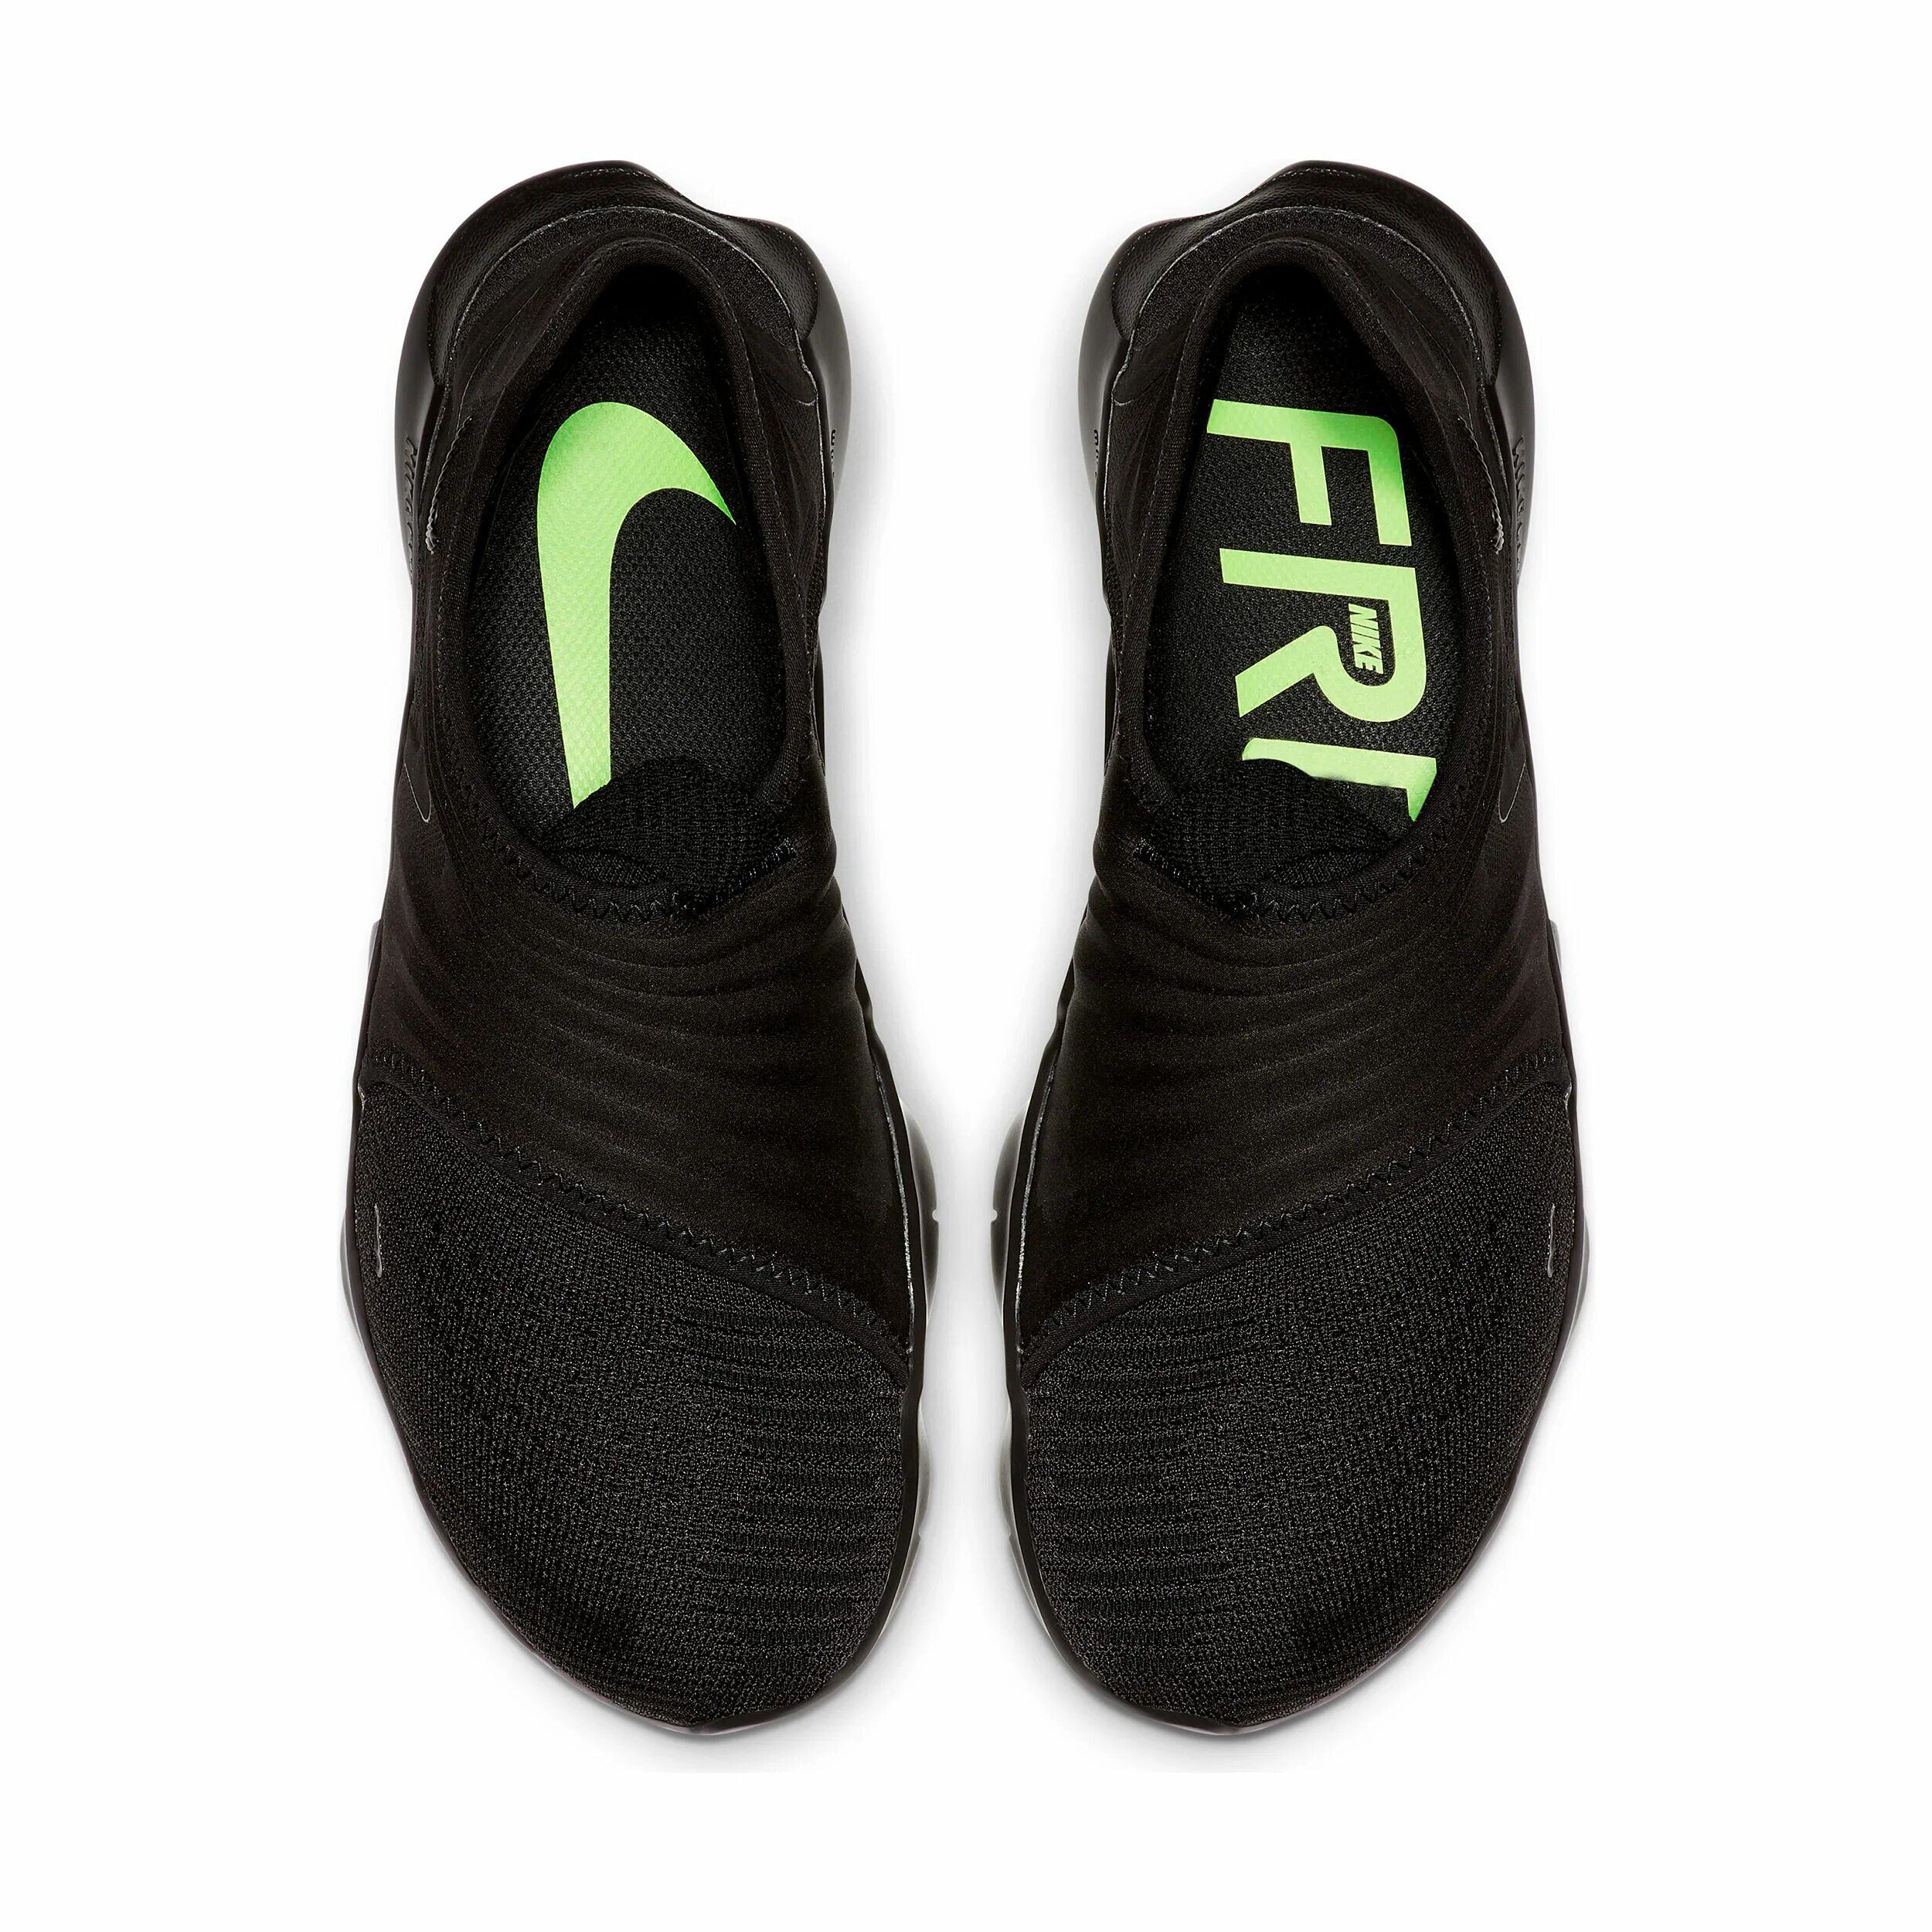 Беговые кроссовки Nike мужские черные. Купить найки для бега